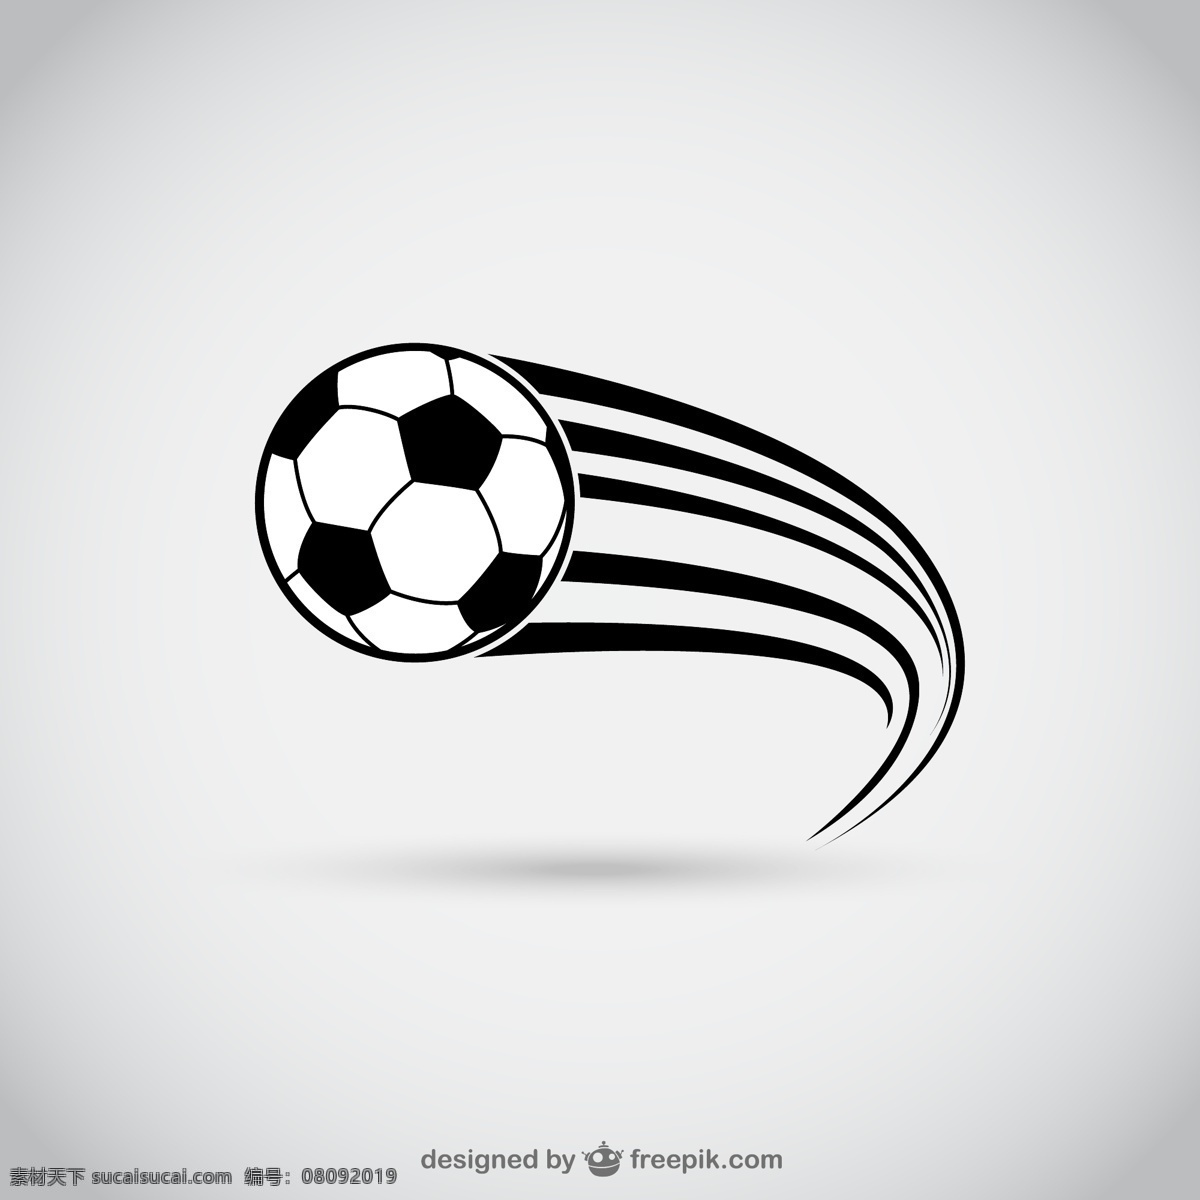 动感 黑白 足球 矢量 世界杯 体育 体育运动 运动 插画 背景 海报 画册 生活百科 体育用品